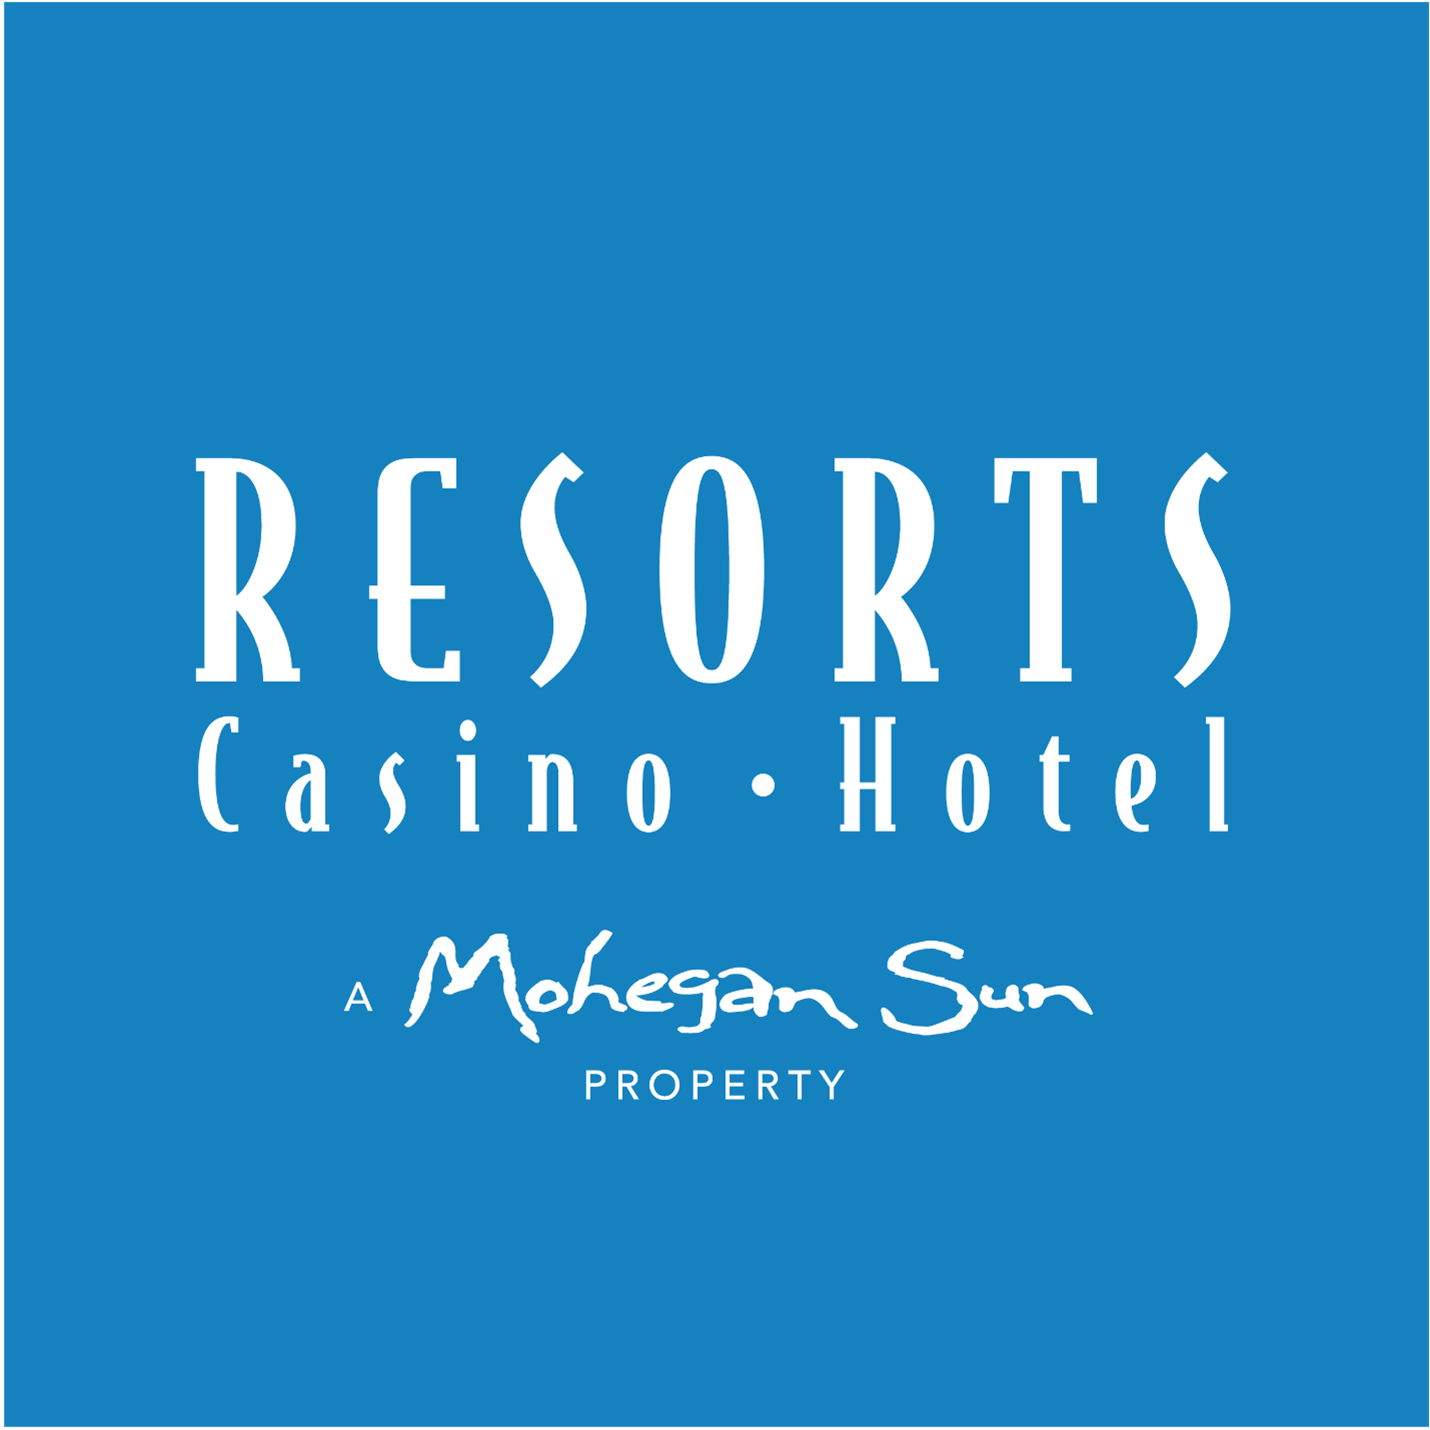 Resorts logo 2021 image